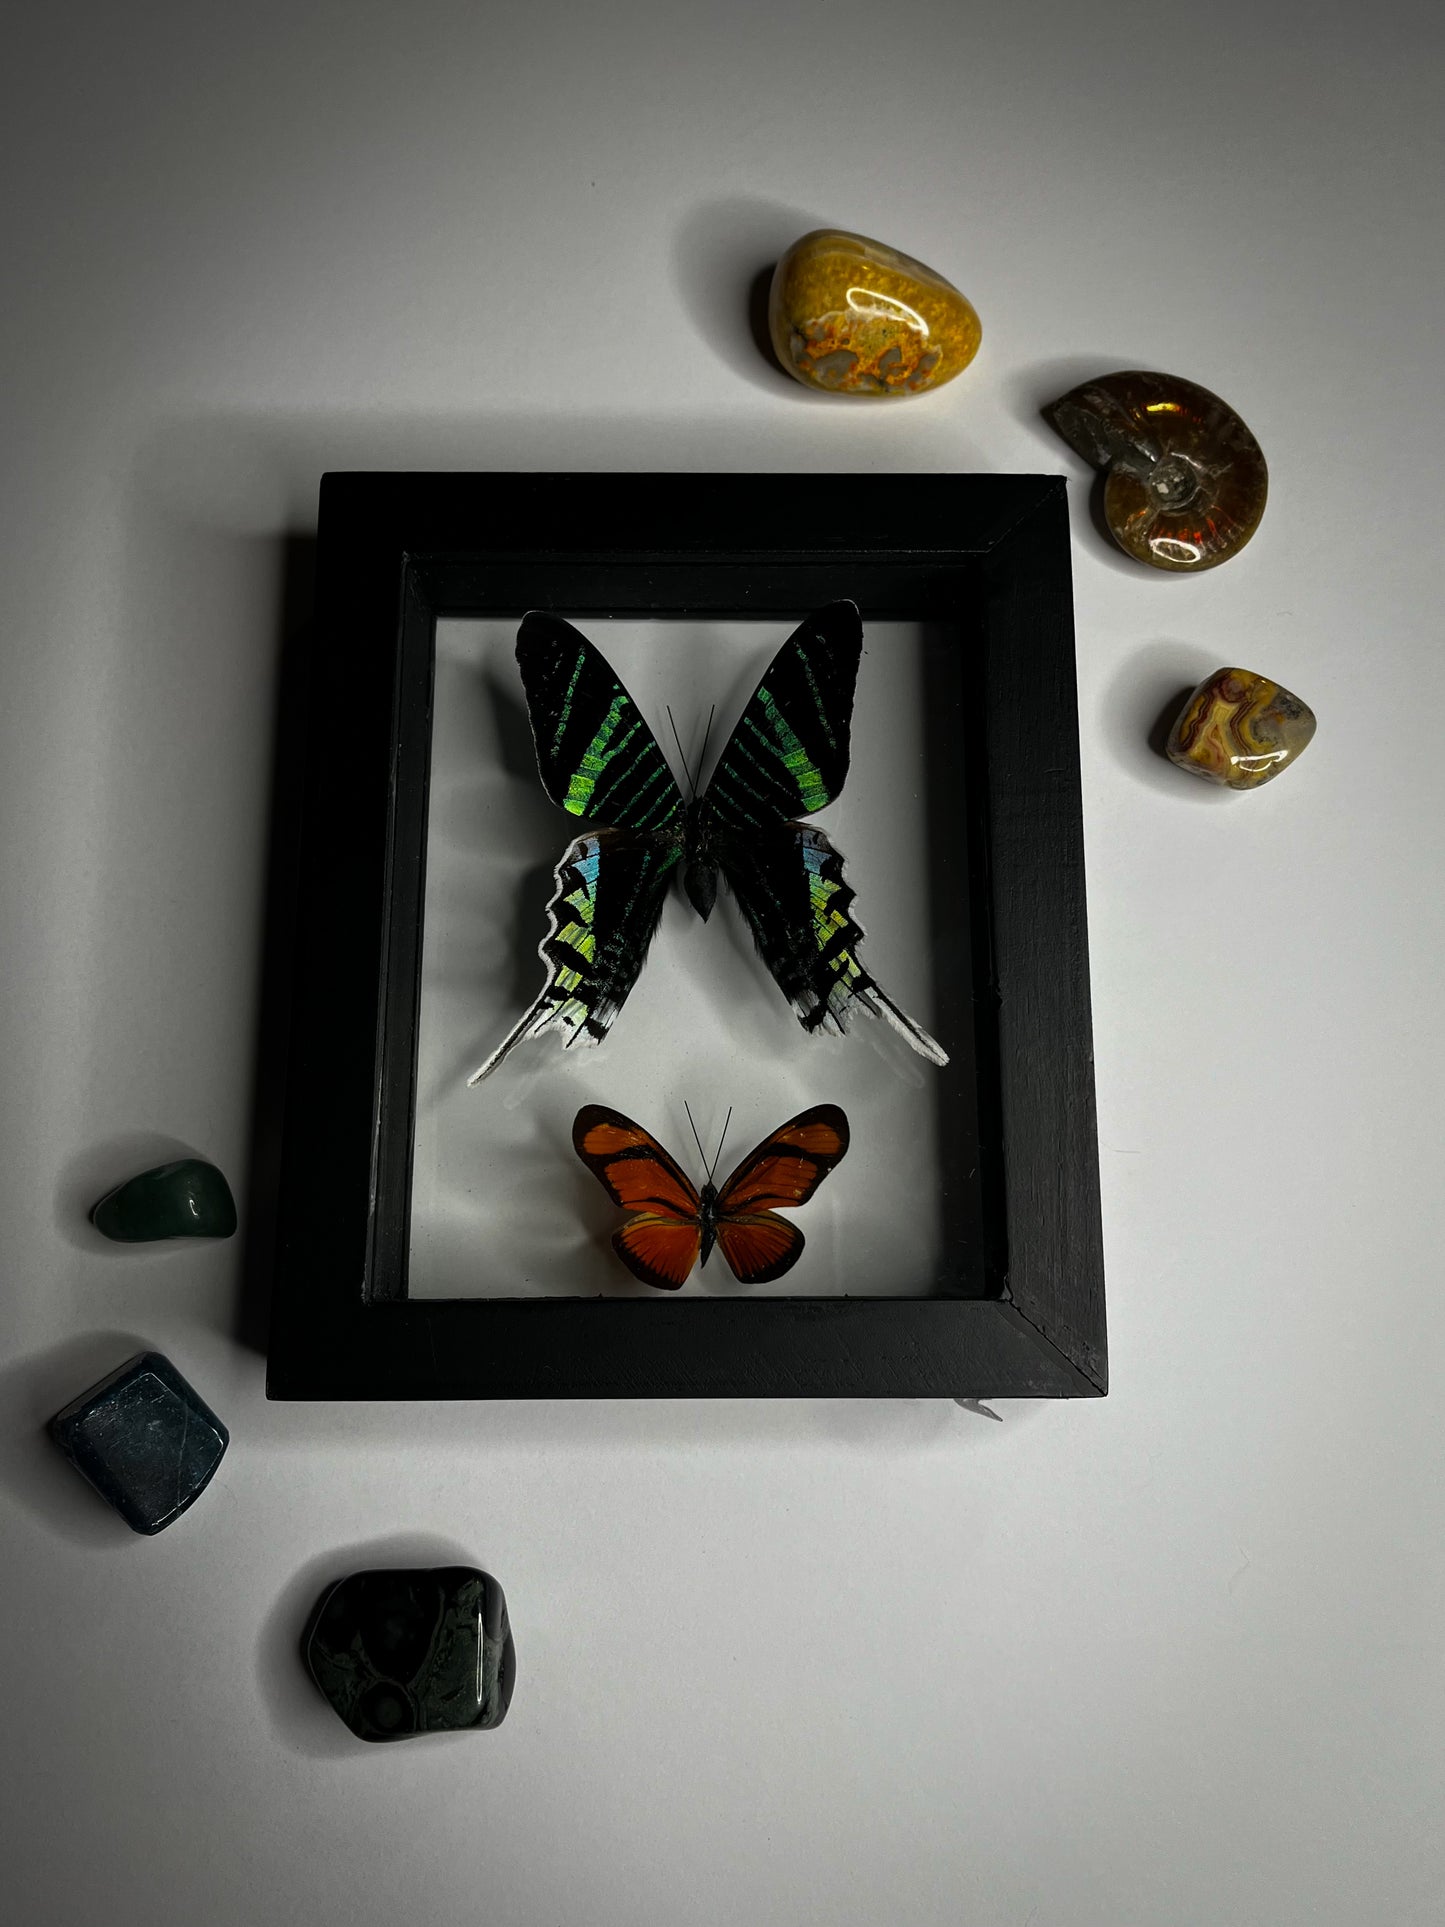 Framed Butterflies